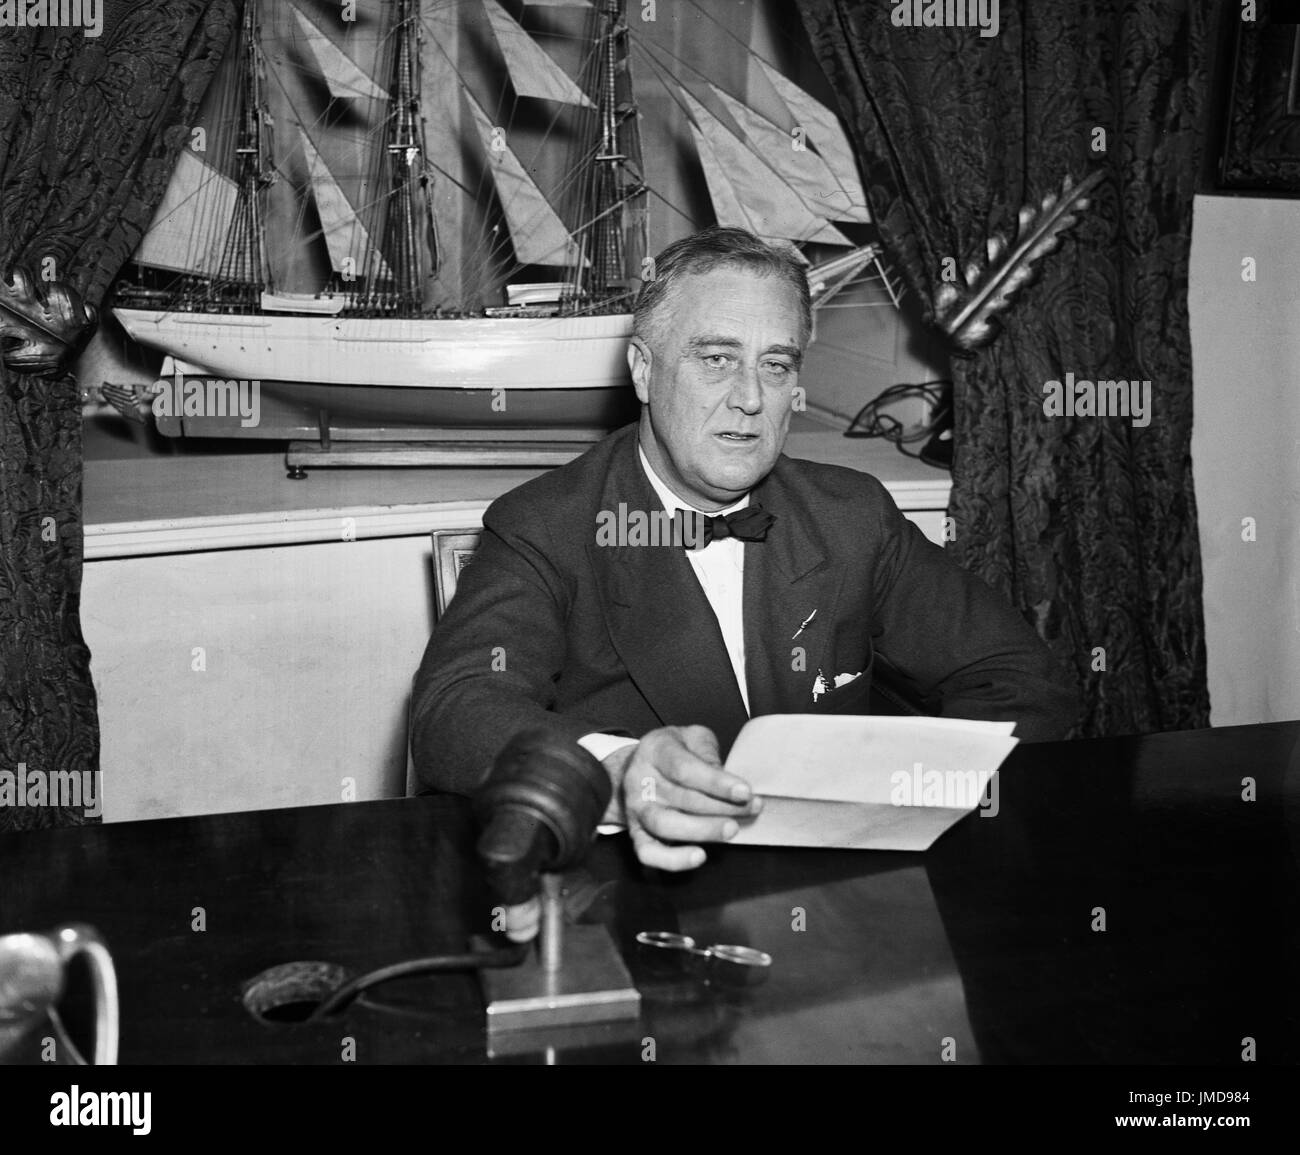 Stati Uniti Il presidente Franklin Roosevelt, Ritratto seduto alla scrivania, Washington DC, Stati Uniti d'America, Harris & Ewing, 1936 Foto Stock